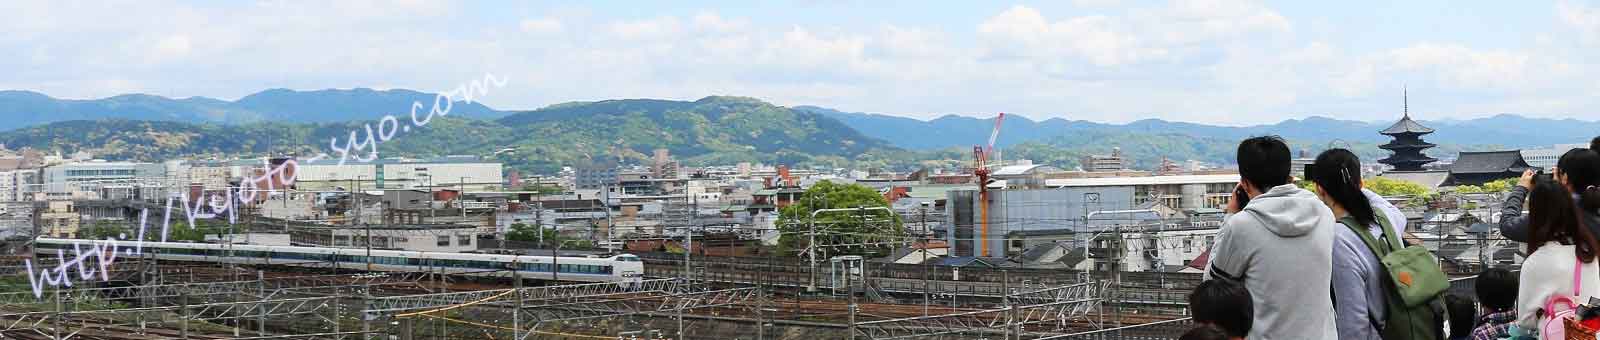 京都鉄道博物館のスカイテラス